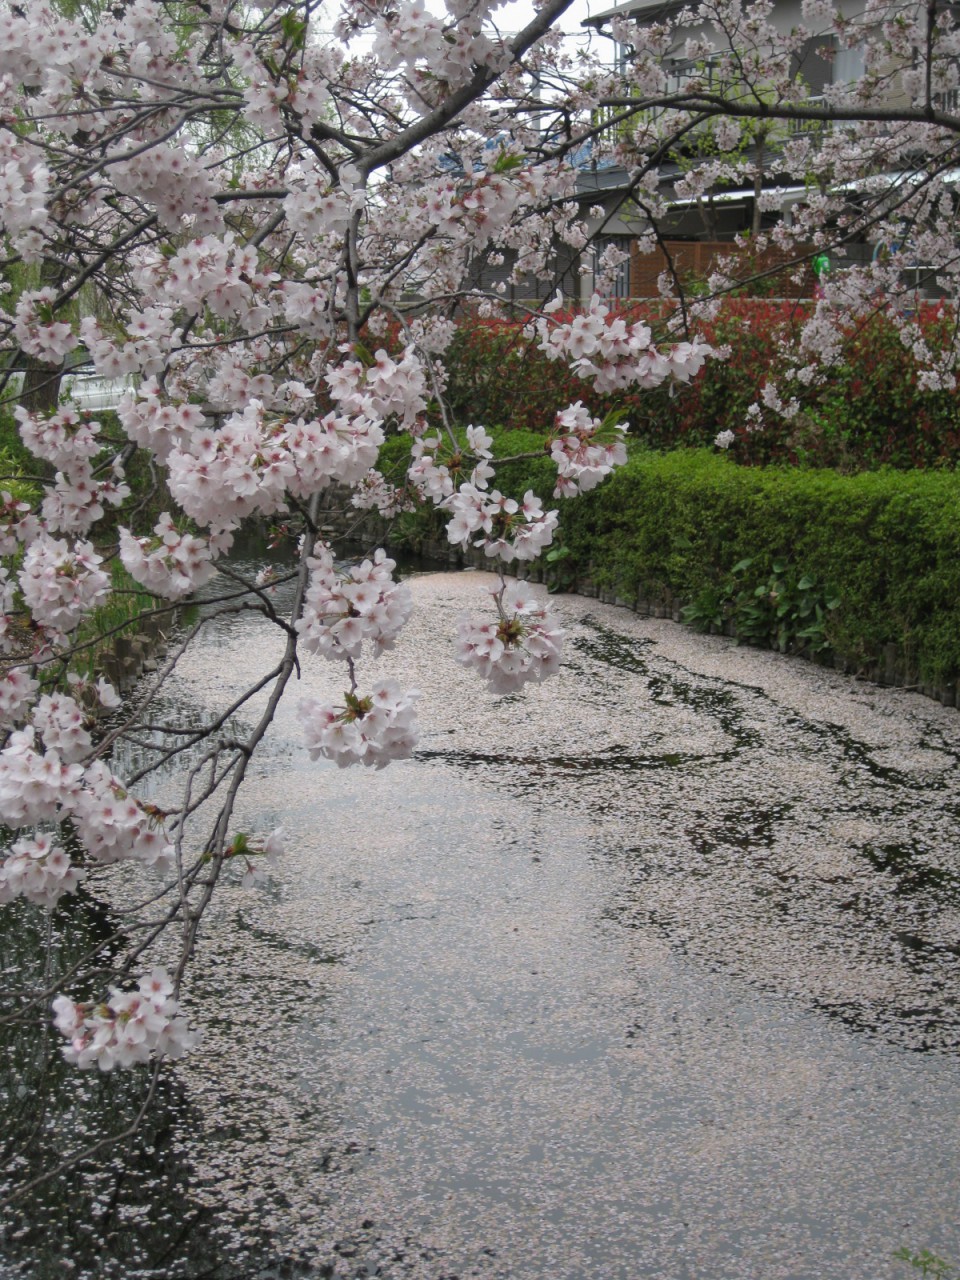 水面に浮かんでいる桜の花びらがとても鮮やかです